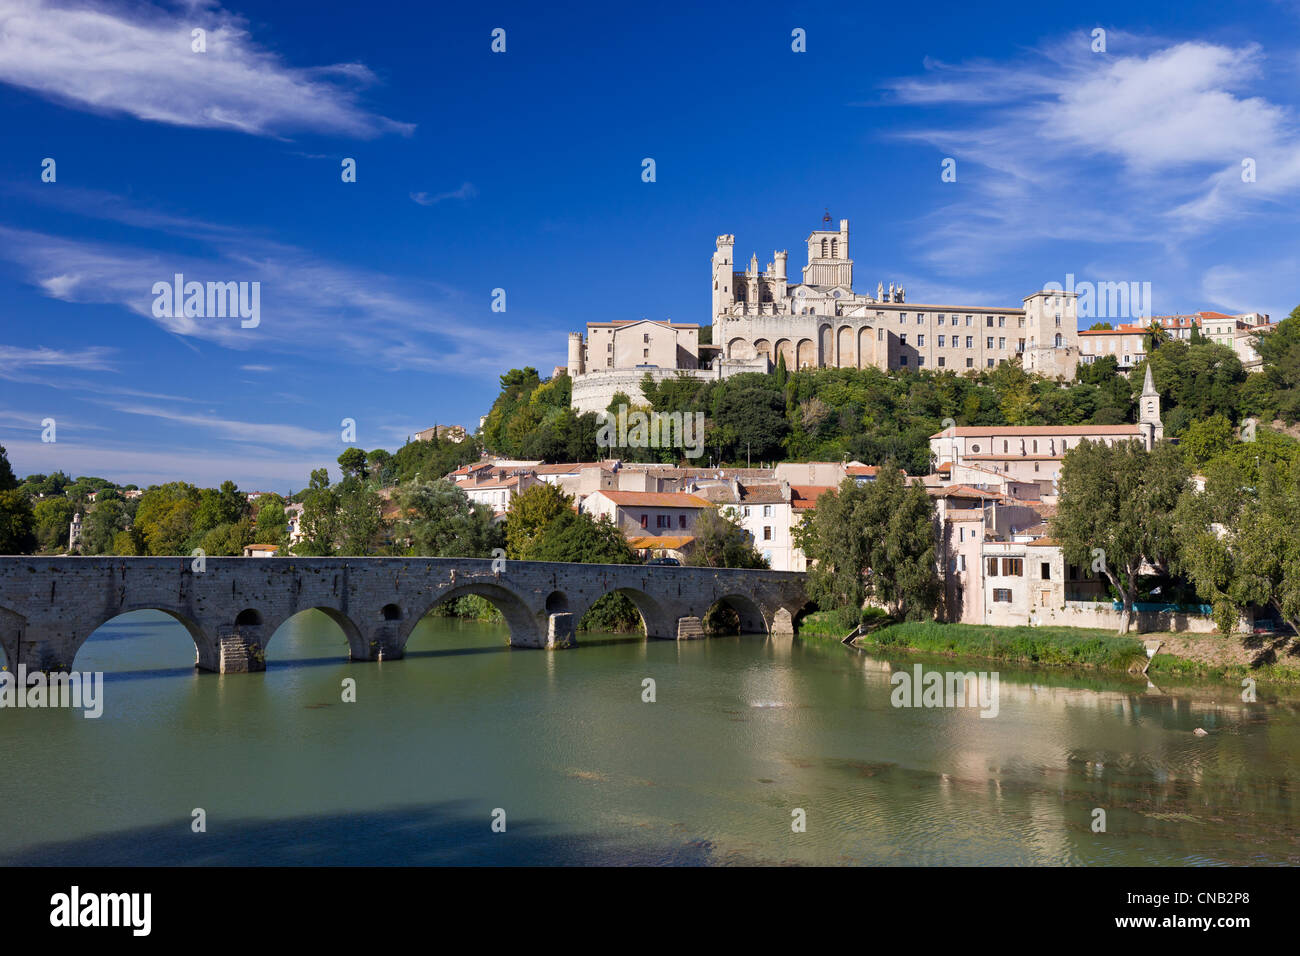 La France, l'Hérault, Béziers, la cathédrale St Nazaire et le Pont Vieux sur le fleuve Orb Banque D'Images